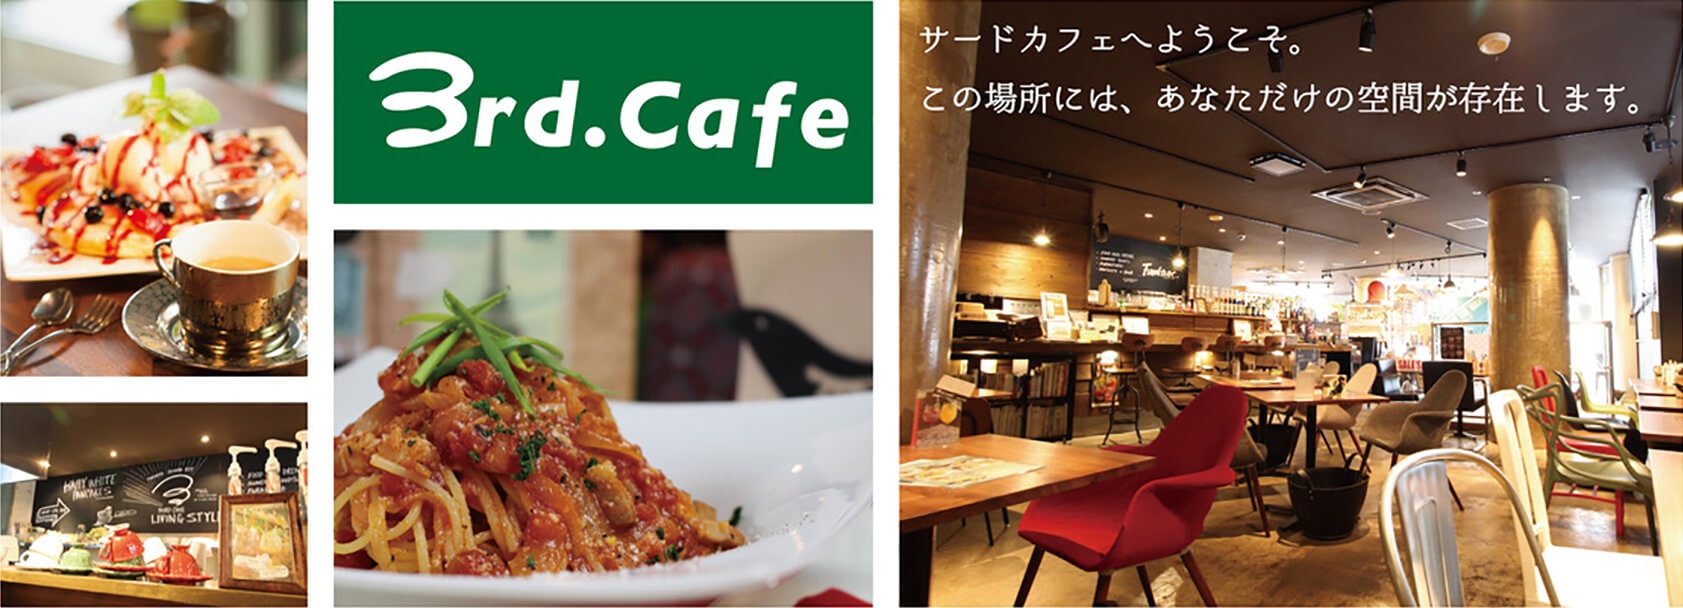 3rd Cafe サードカフェ カフェ 雑貨 インテリア 家づくり 福岡 博多南 春日市